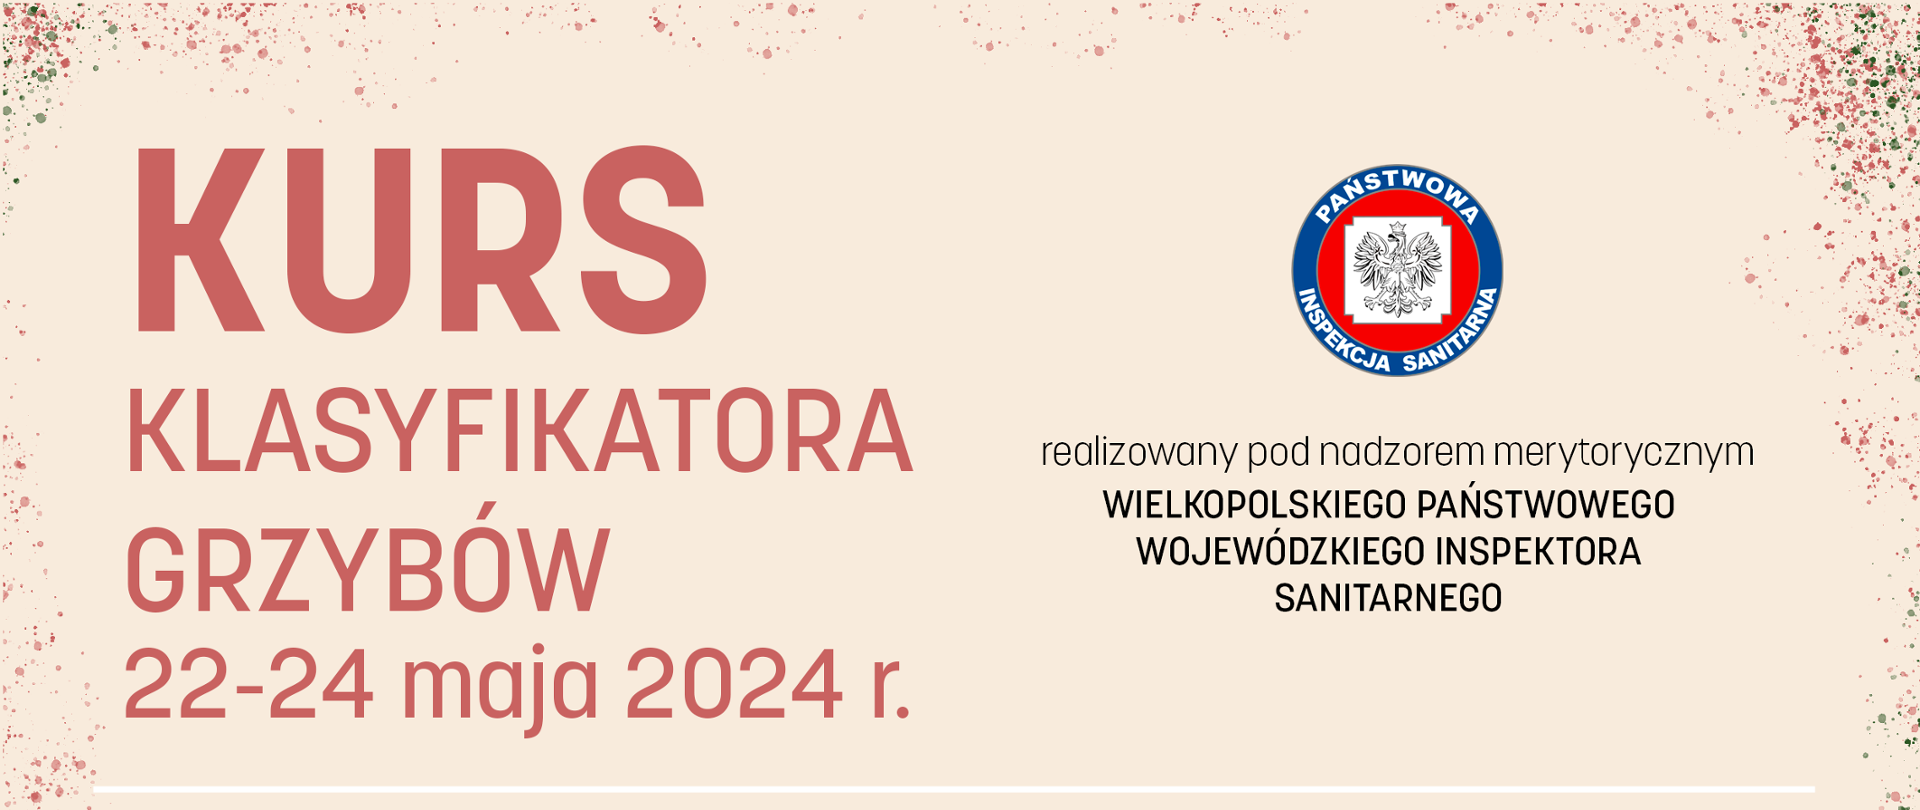 Kurs Klasyfikatora grzybów 22-24 maja 2024 r.
WSSE Poznań